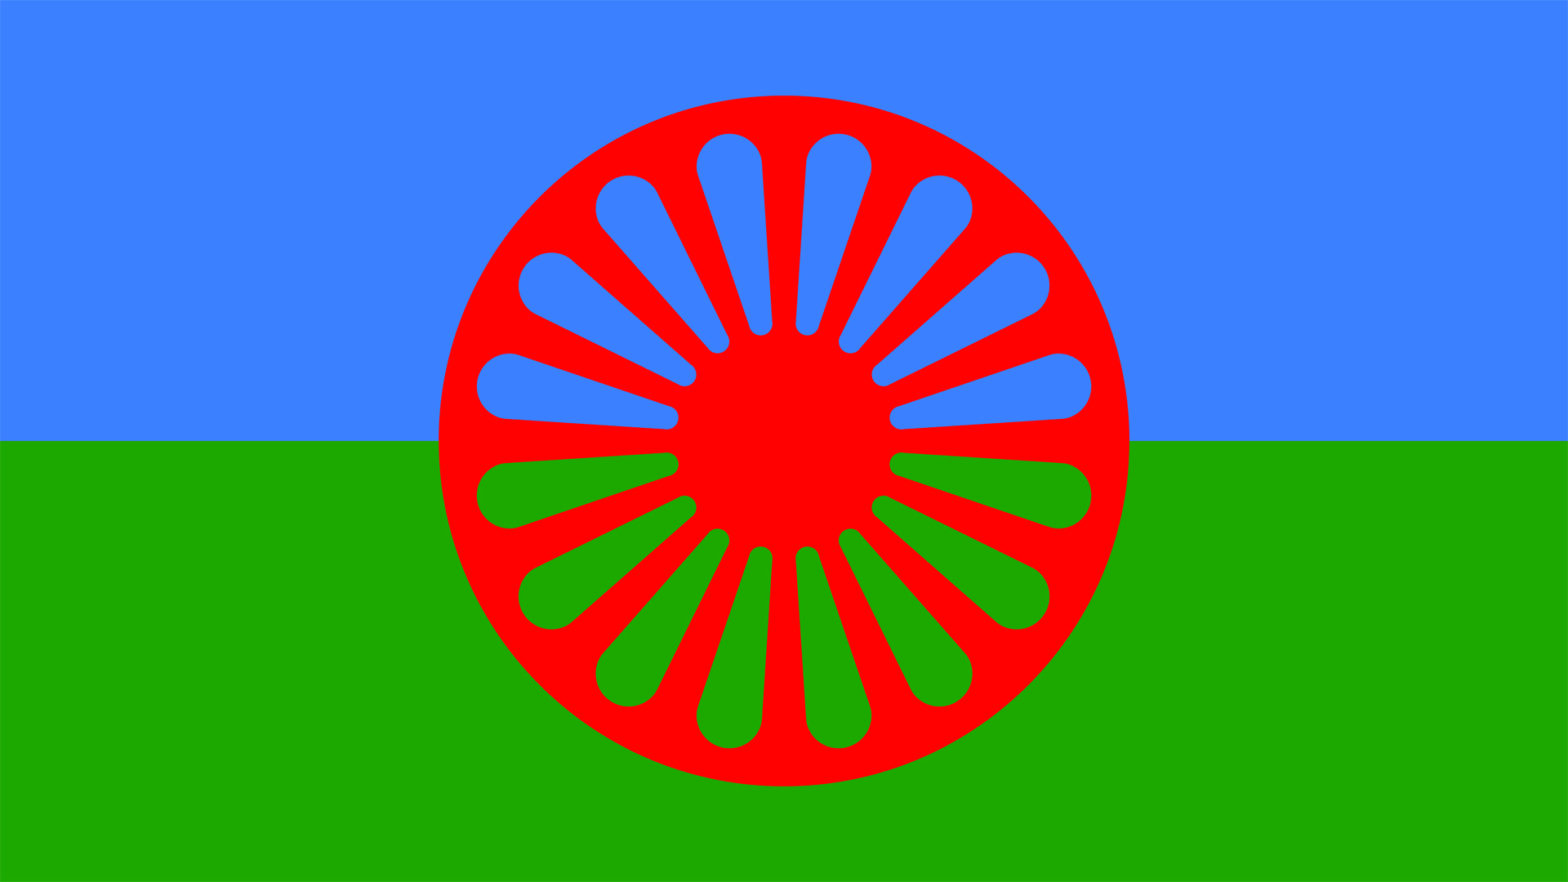 © Romano Svato Ein rotes Rad auf blau-grüner Fahne